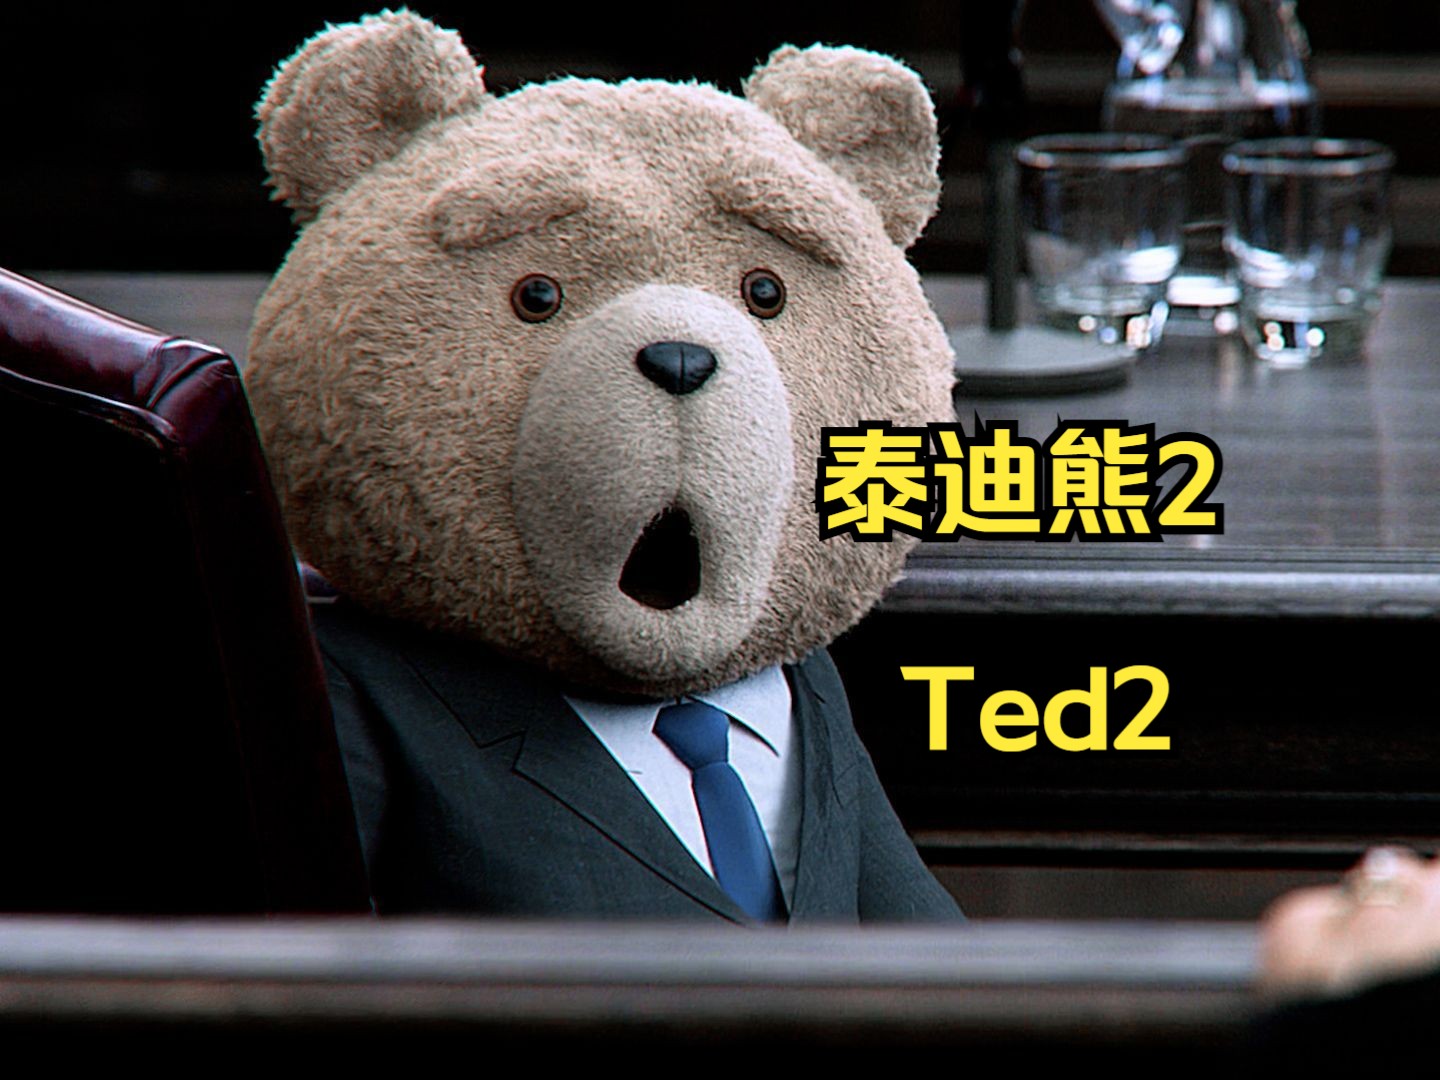 泰迪熊惊讶表情包图片